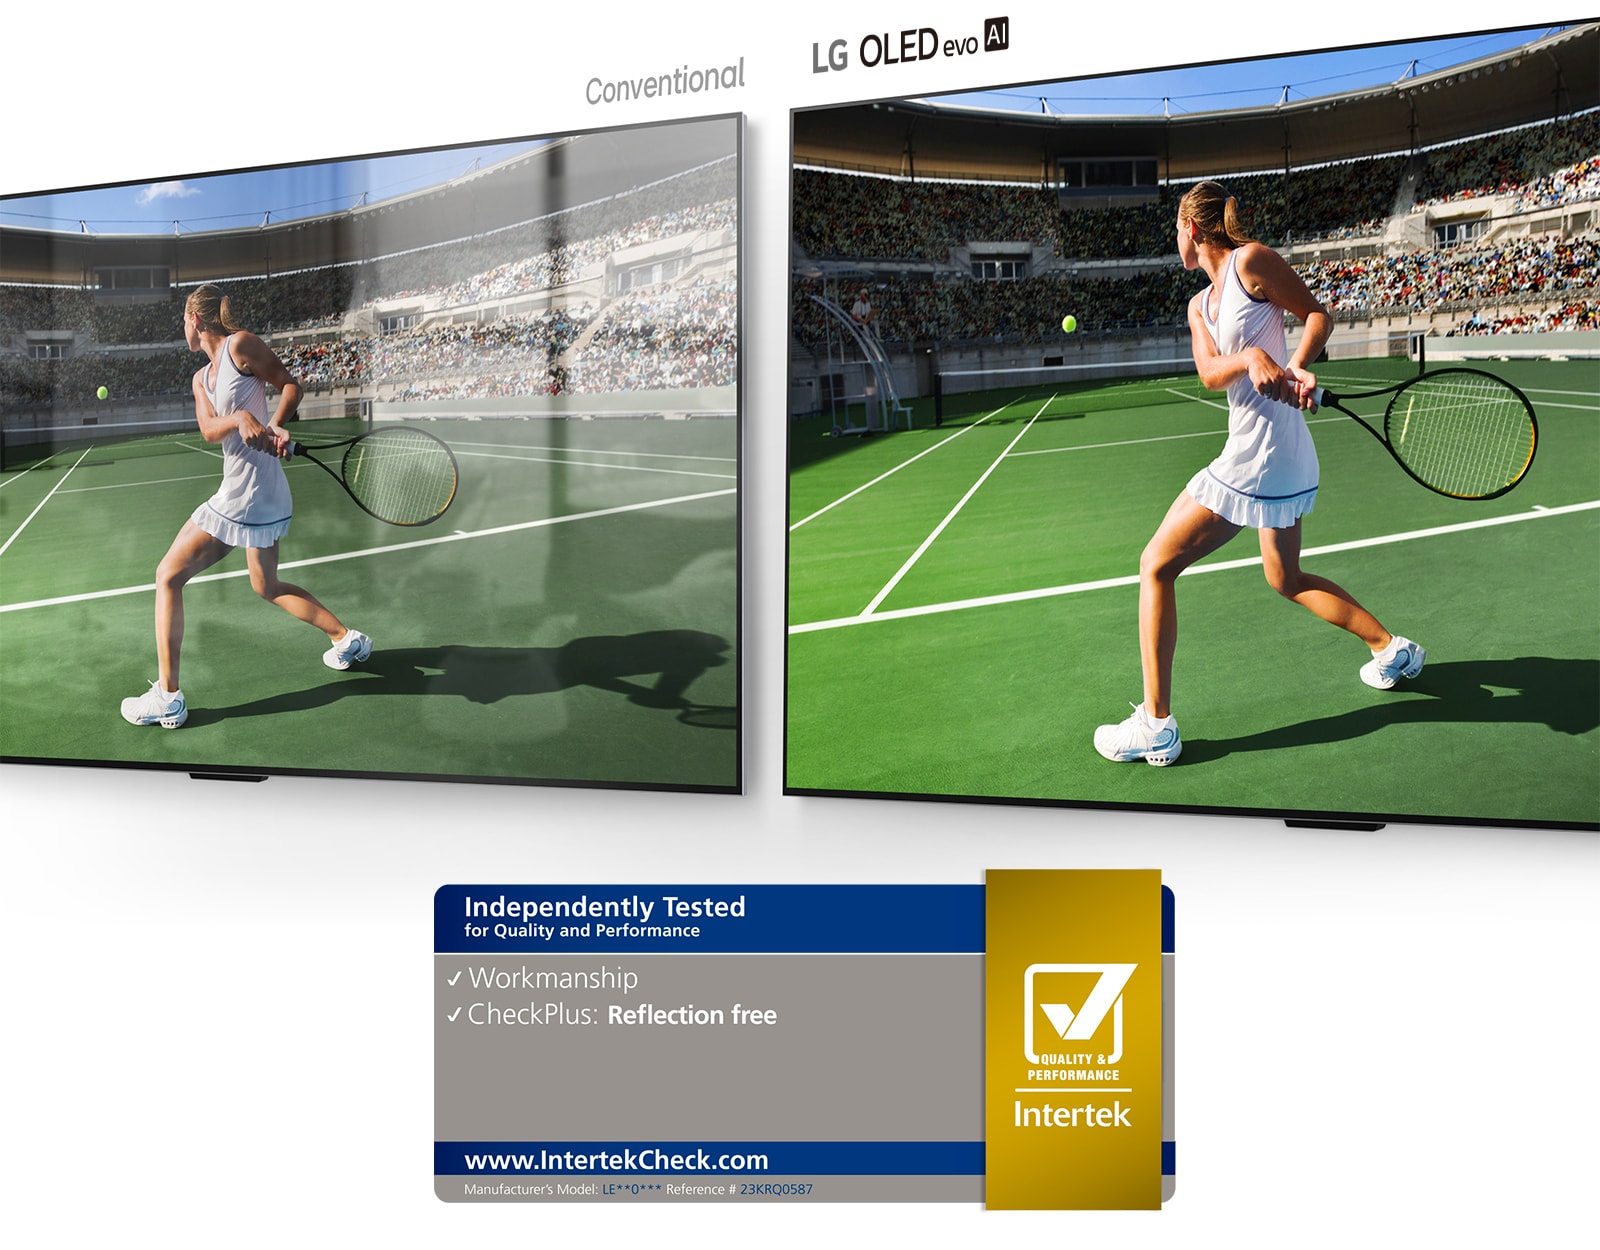 Til venstre viser et almindeligt TV en tennisspiller på et stadion med refleksioner fra rummet på skærmen. Til højre viser LG OLED evo AI G4 det samme billede af en tennisspiller på et stadion, men uden refleksioner fra rummet, og billedet har mere lysstyrke og flere farver.